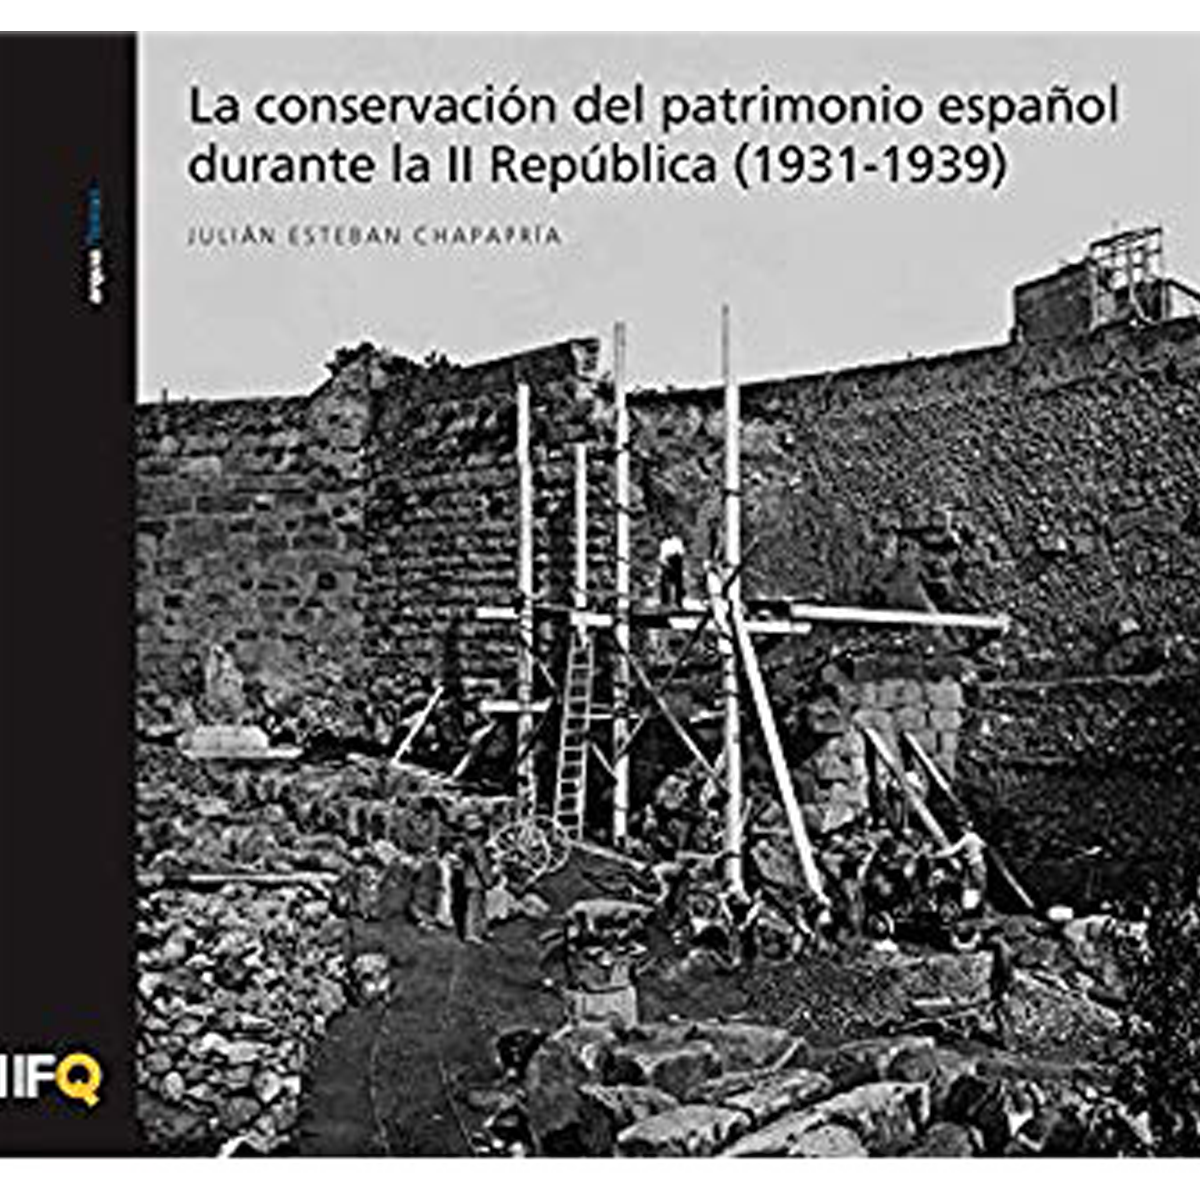 La conservación del patrimonio español durante la II República (1931-1939)